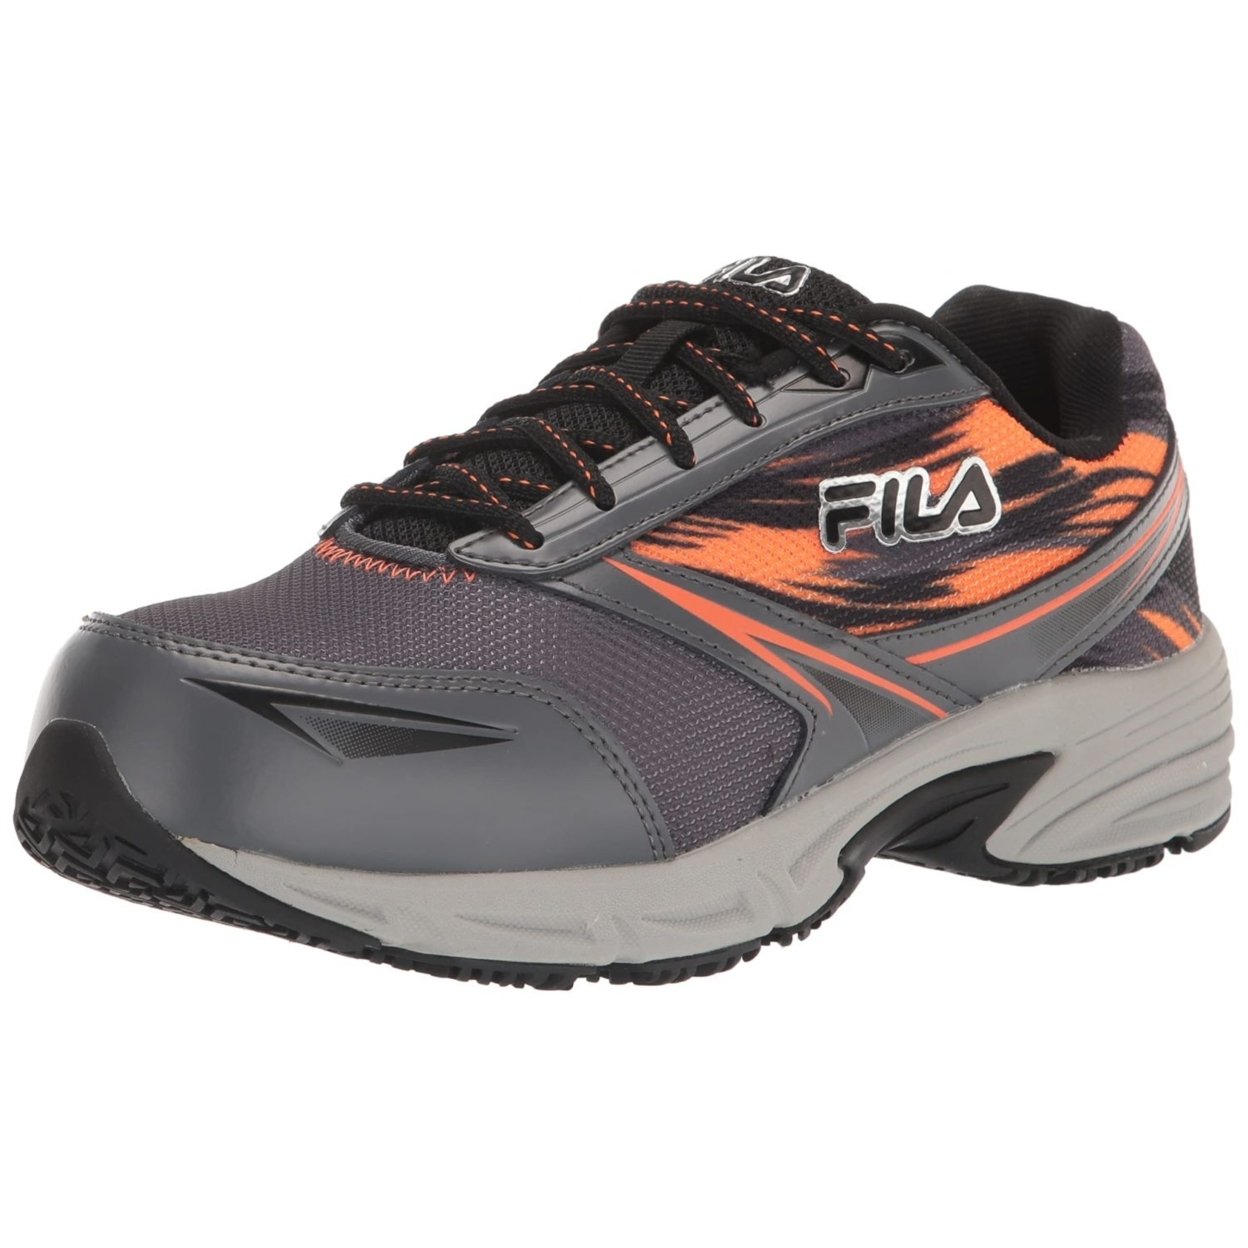 Fila Menâs Memory Meiera 2 Slip Resistant And Composite Toe Work Shoe CSRK/BLK/VORN - Castlerock/Black/Vibrant Orange, 11.5